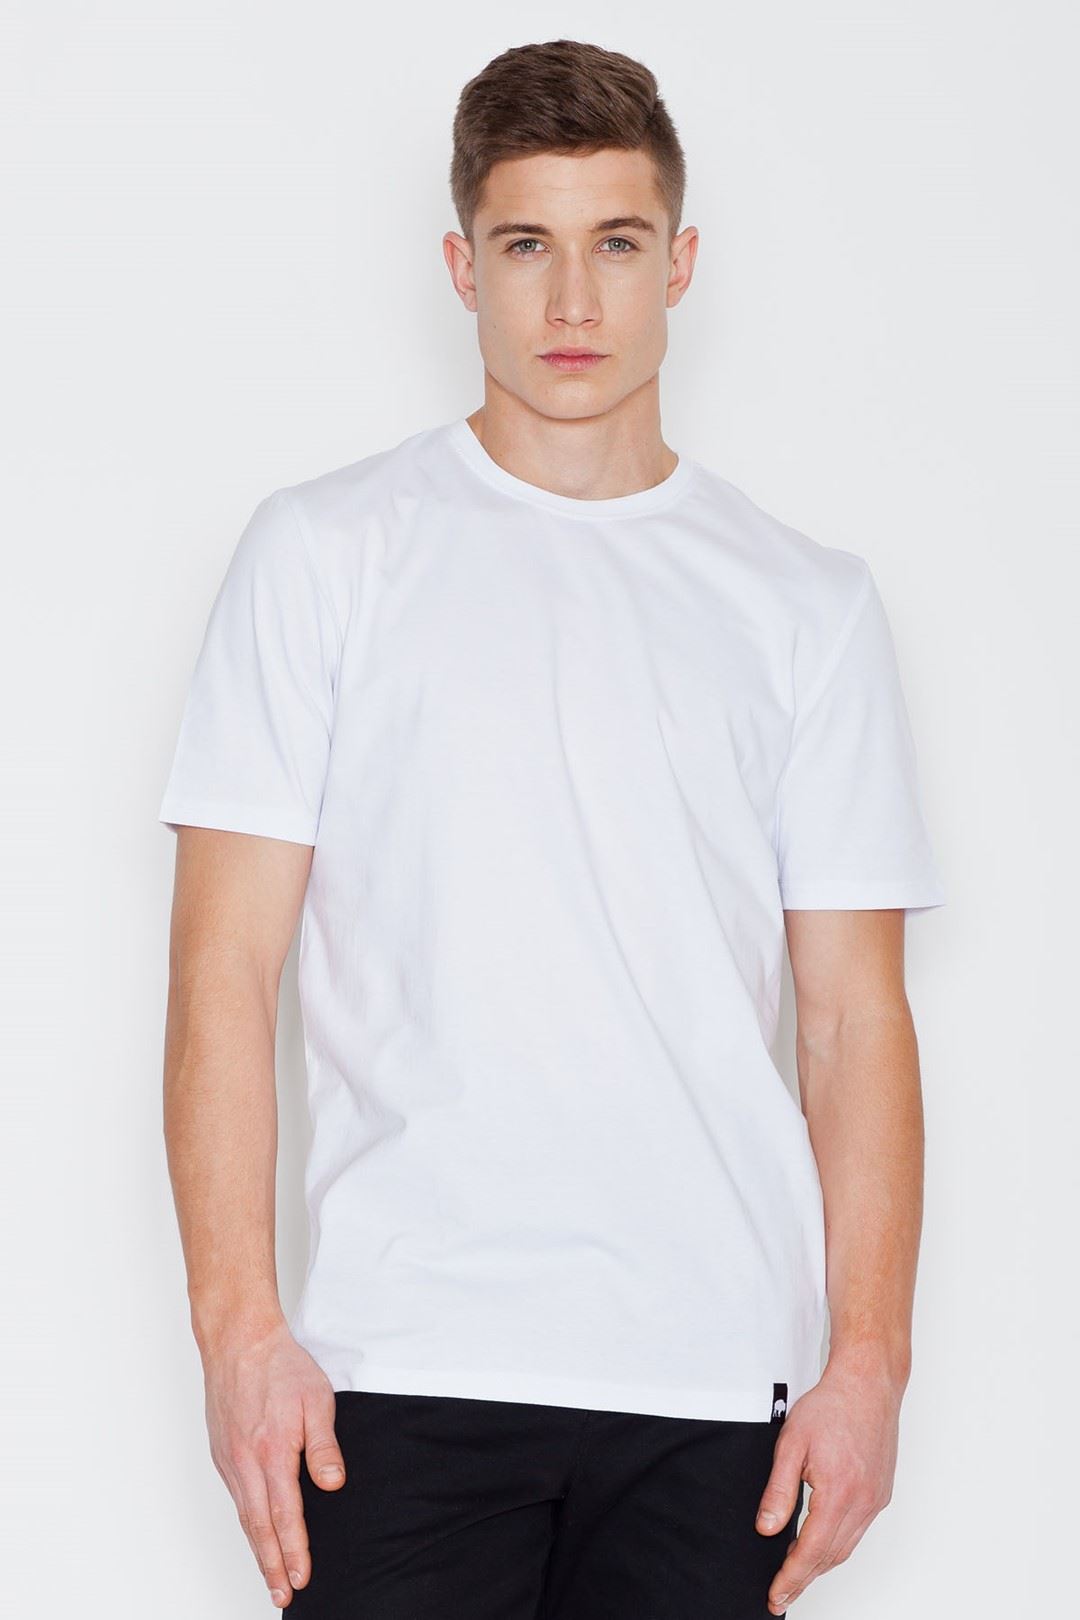 T-shirt V001 White S